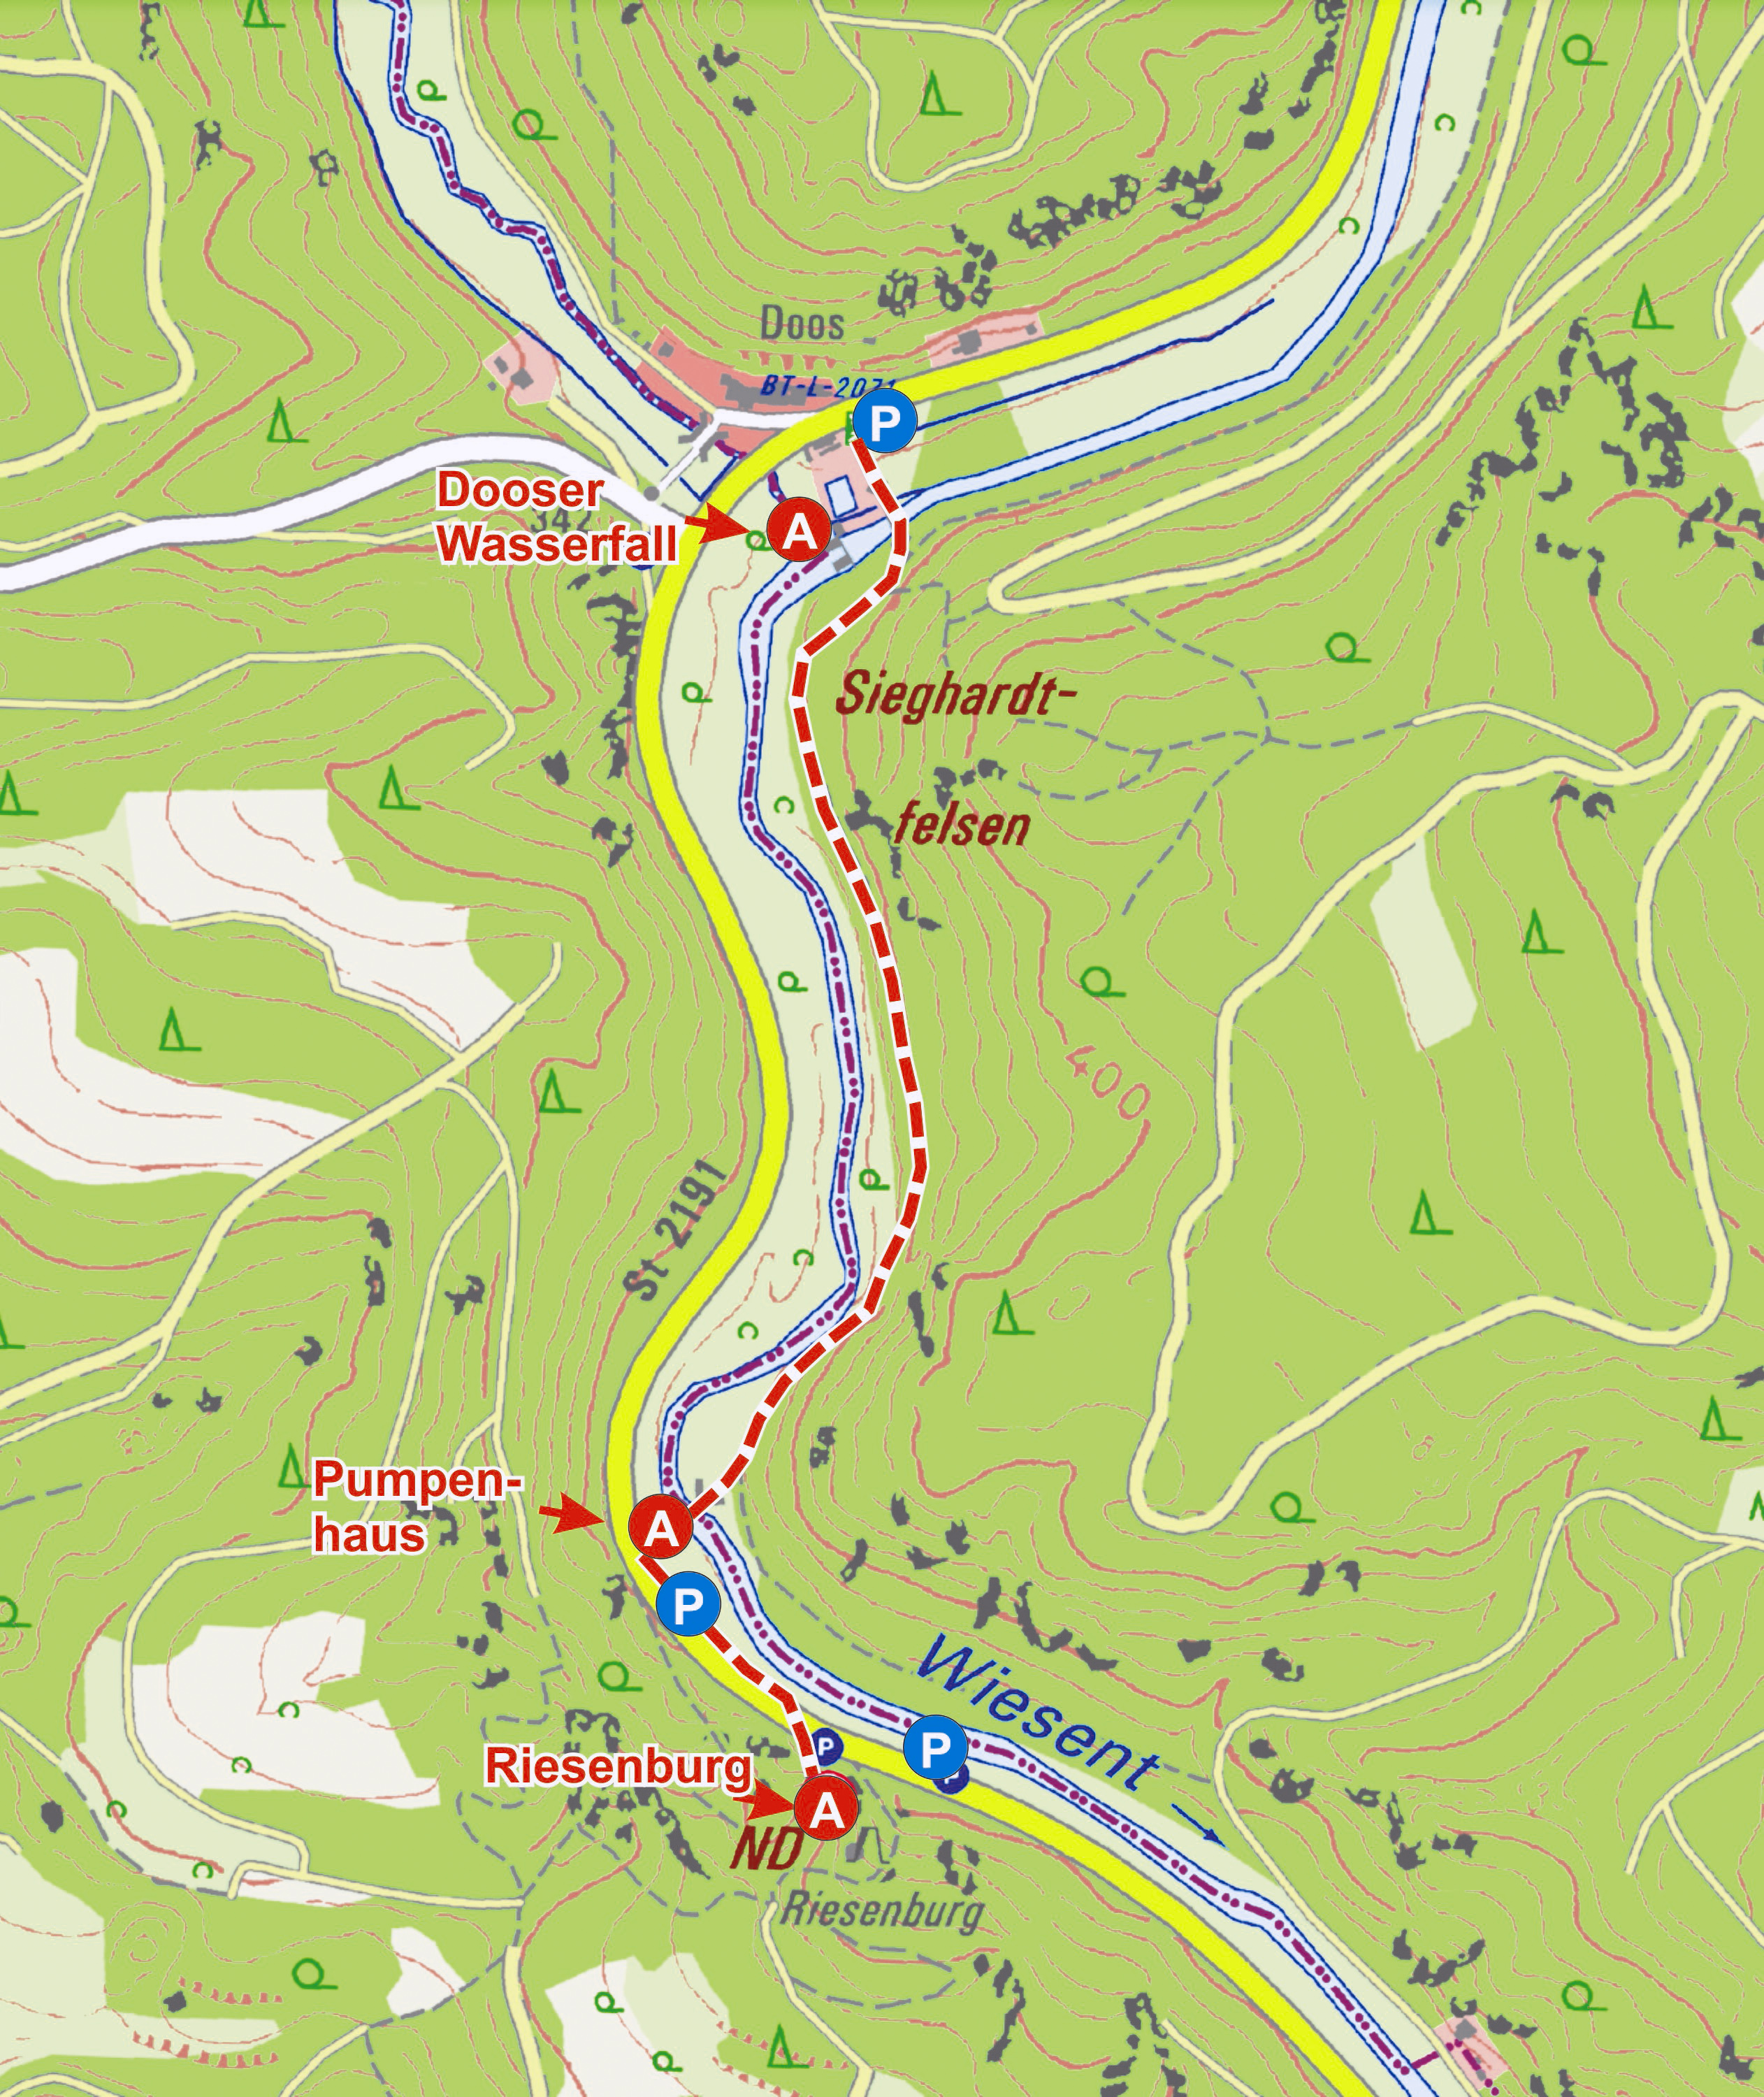 Abb. 20: Zufahrt und Fußstrecke zur Riesenburg und zum Dooser Wasserfall